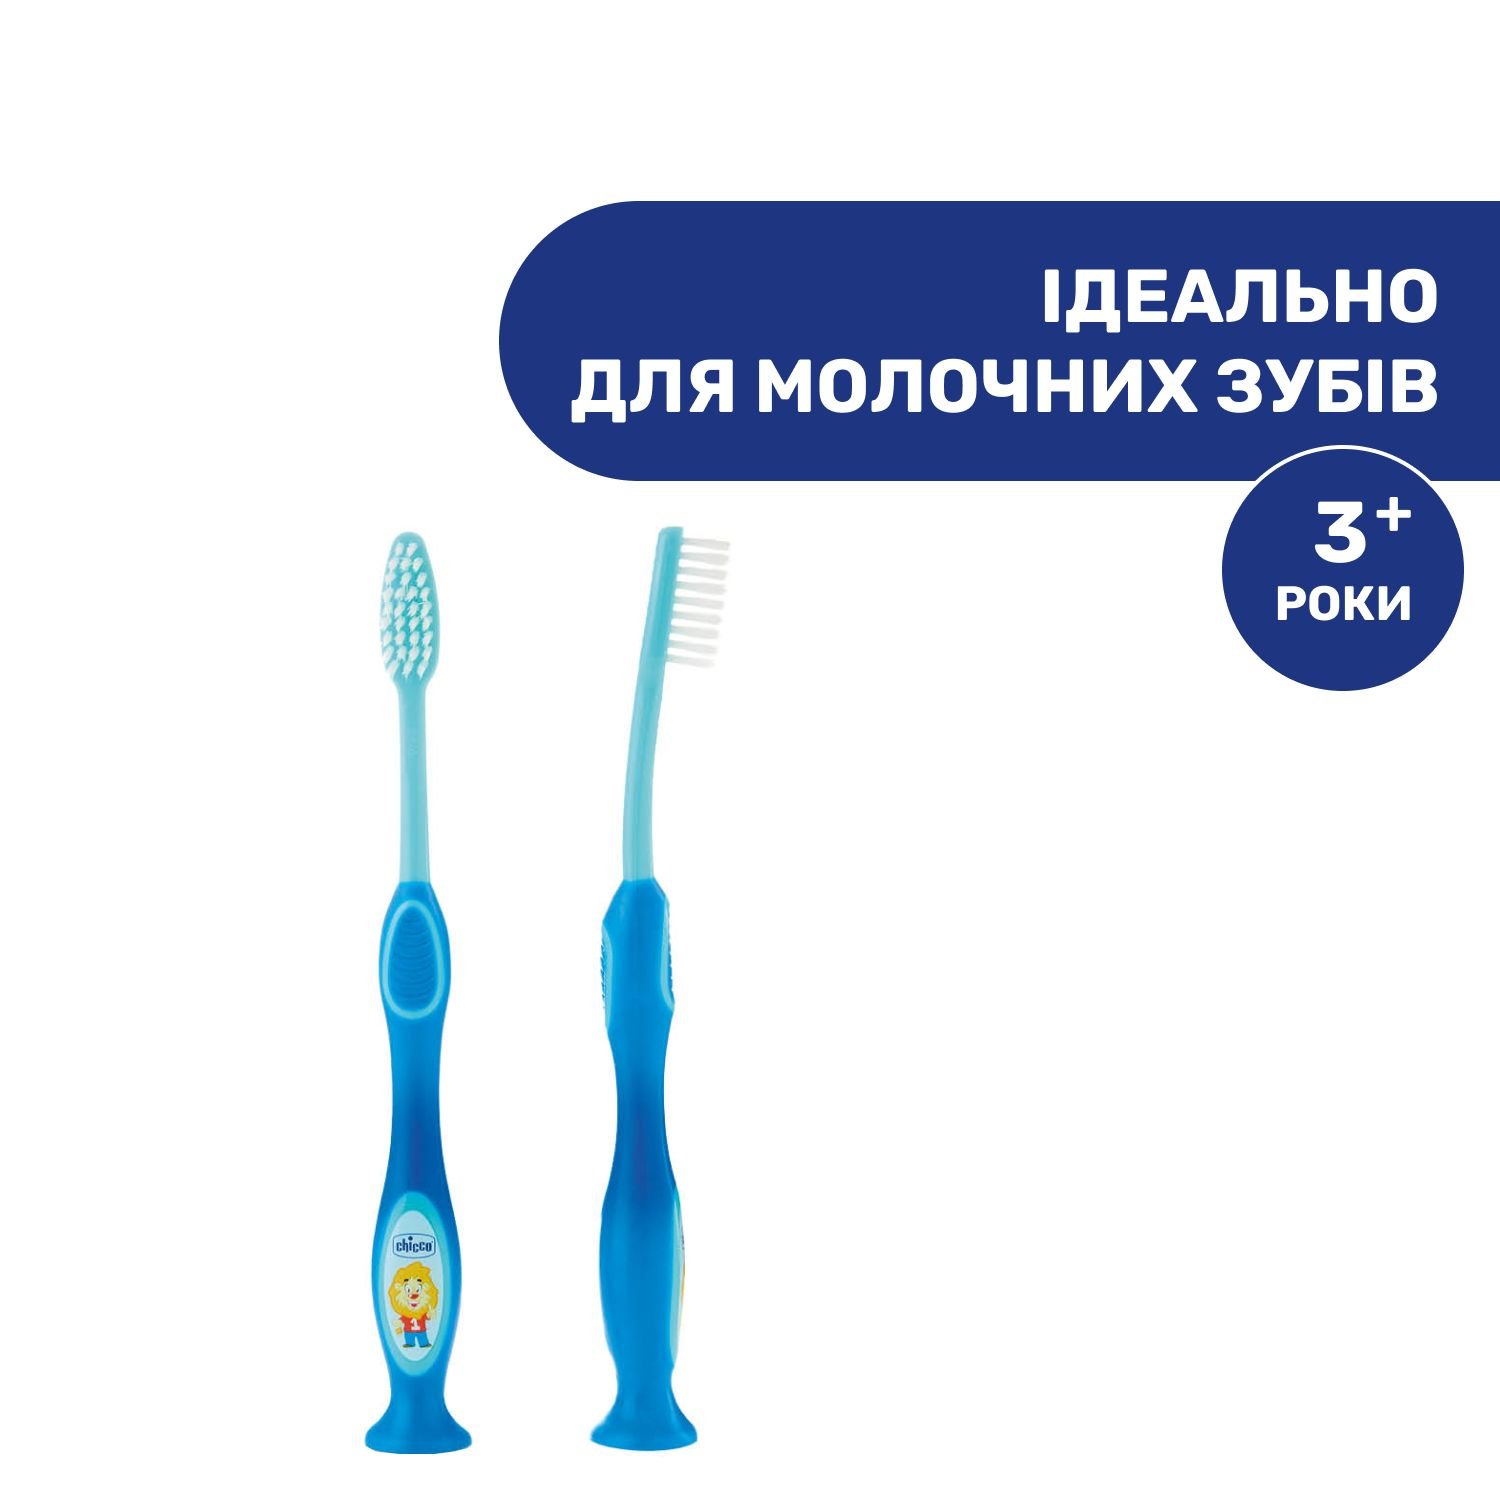 Дитяча зубна щітка Chicco для молочних зубів Левеня, синій, 3-6 років (09079.20.10) - фото 3